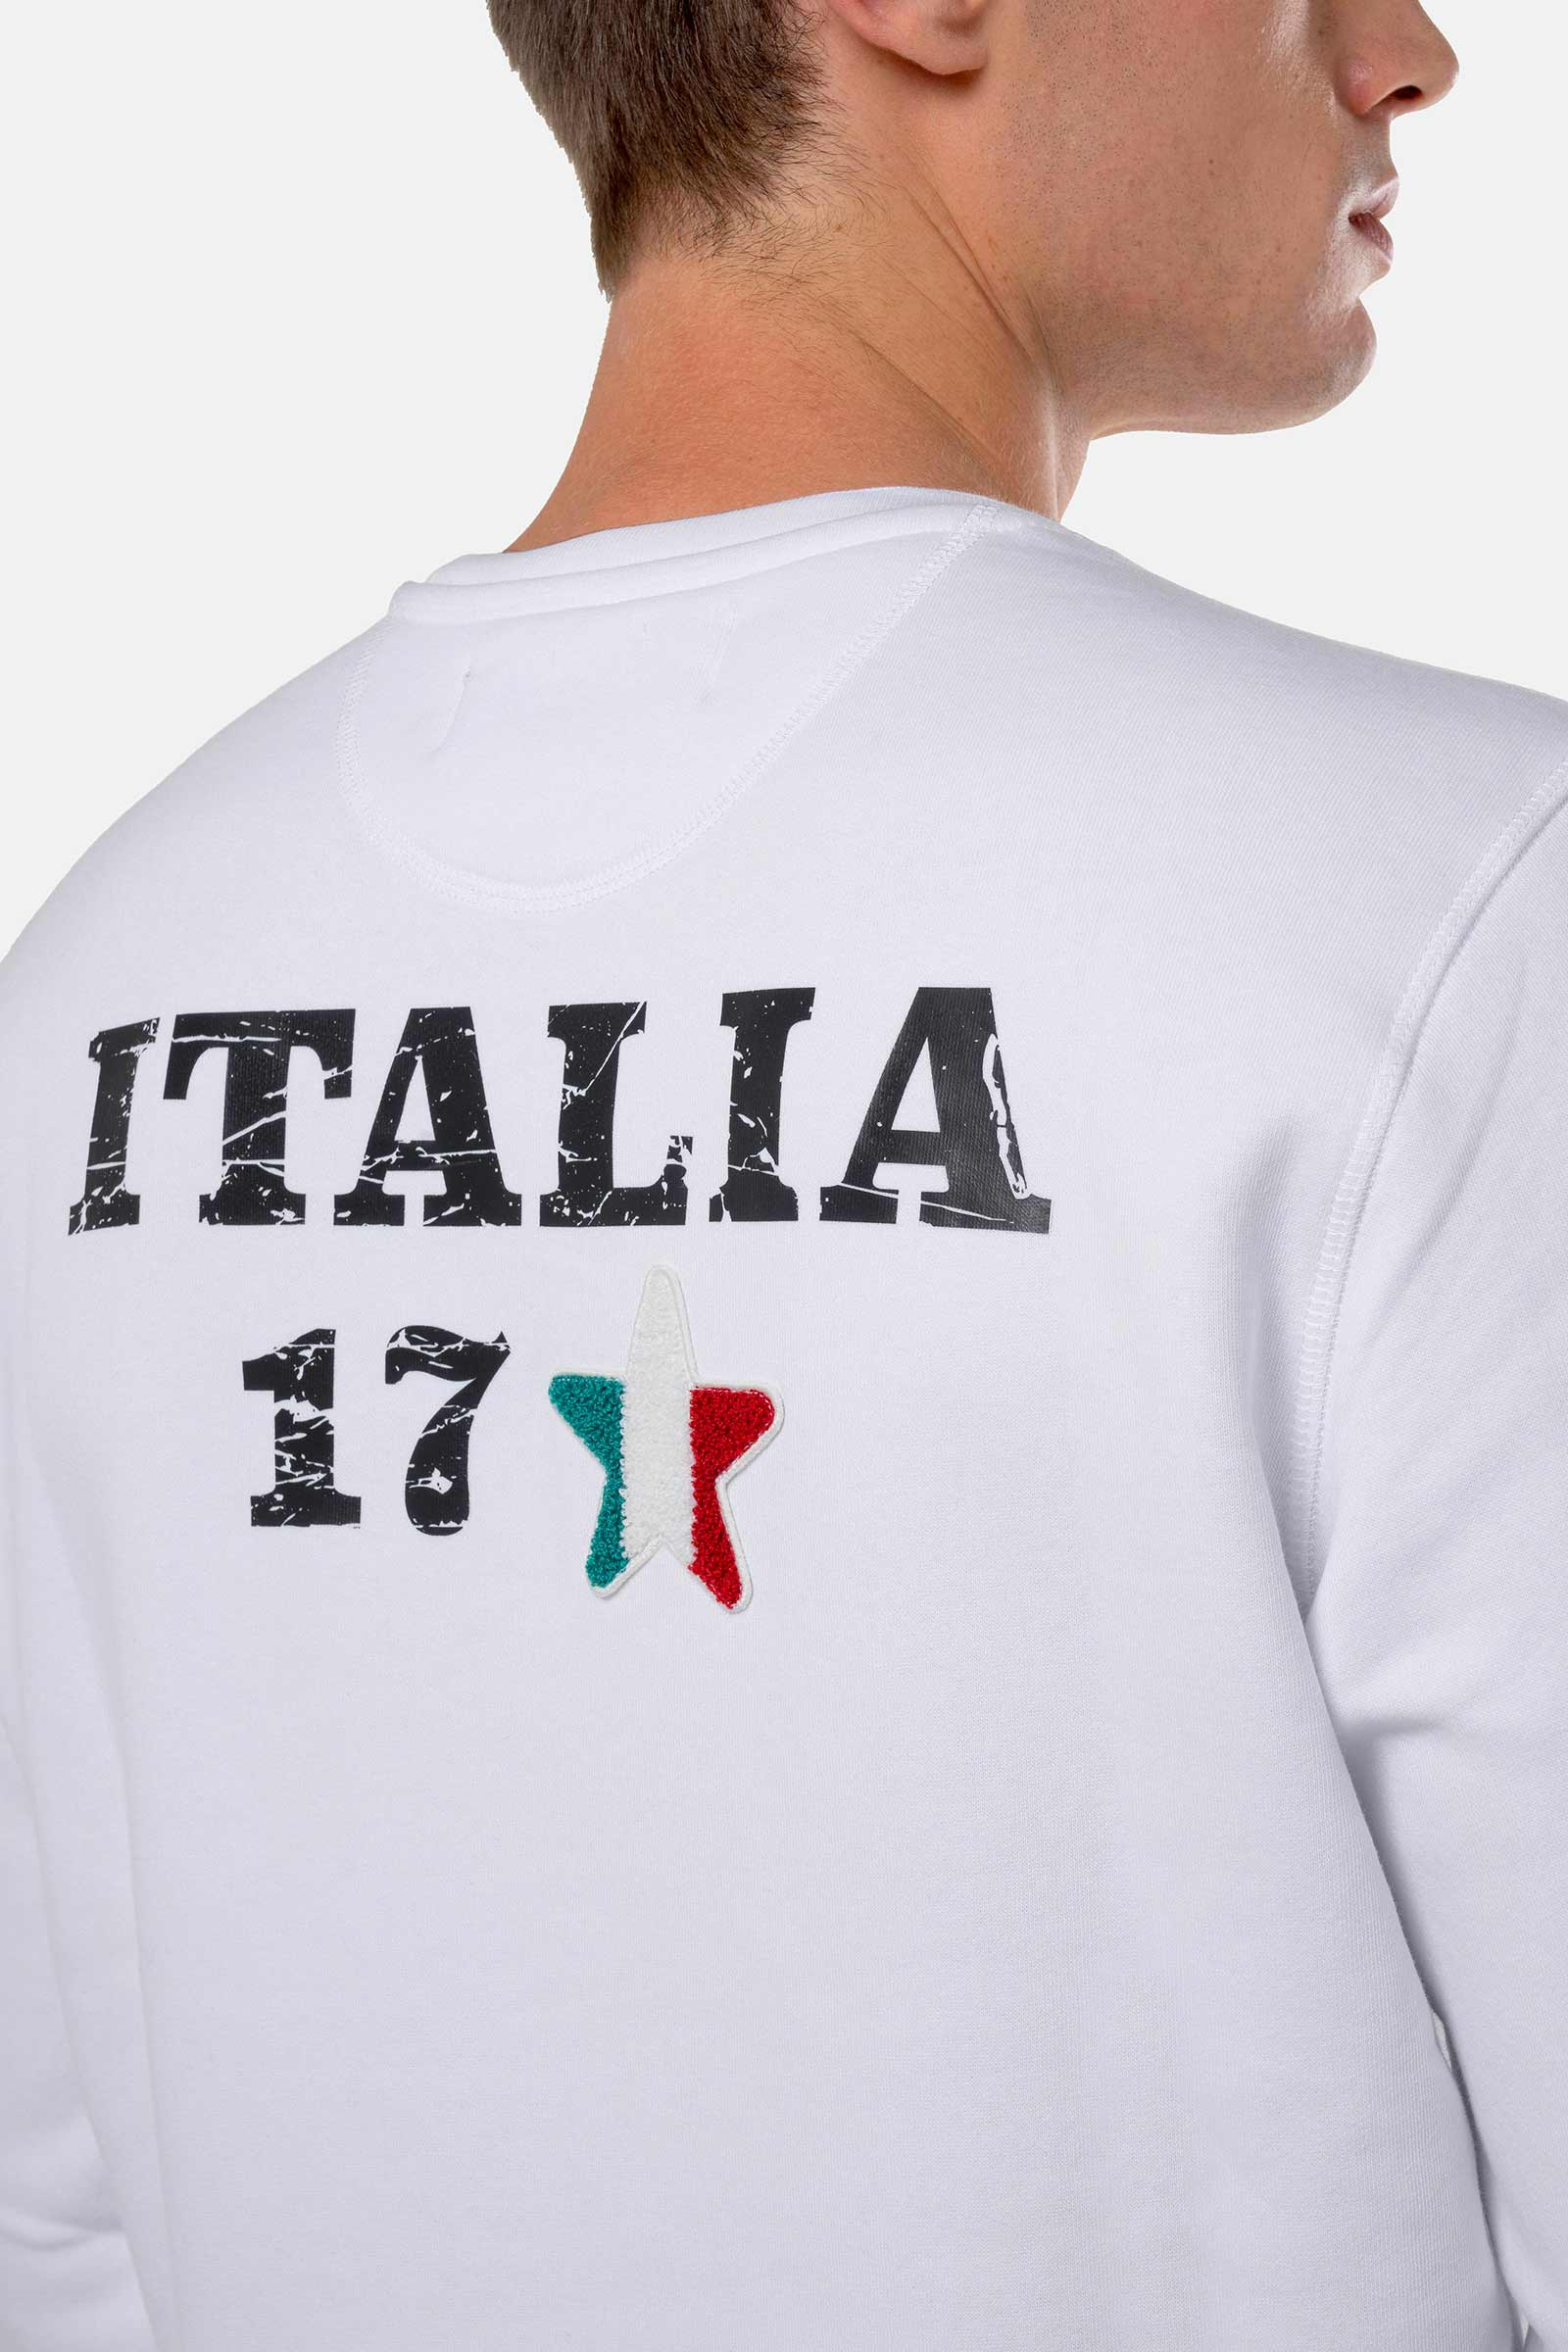 ITALIA 17 SWEATSHIRT - WHITE - Hydrogen - Luxury Sportwear